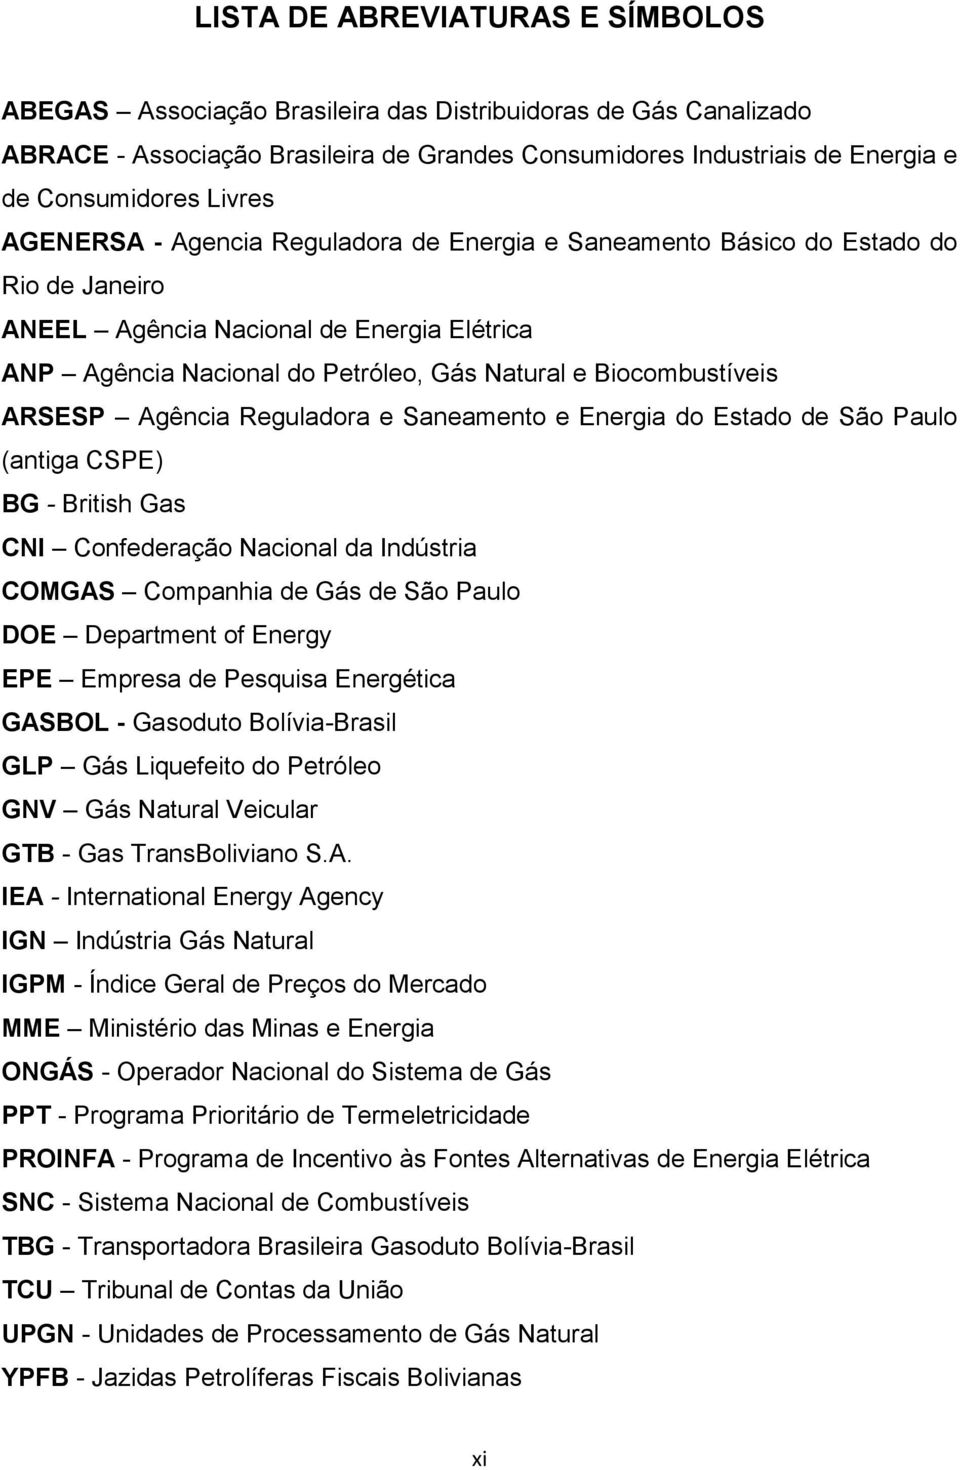 Biocombustíveis ARSESP Agência Reguladora e Saneamento e Energia do Estado de São Paulo (antiga CSPE) BG - British Gas CNI Confederação Nacional da Indústria COMGAS Companhia de Gás de São Paulo DOE